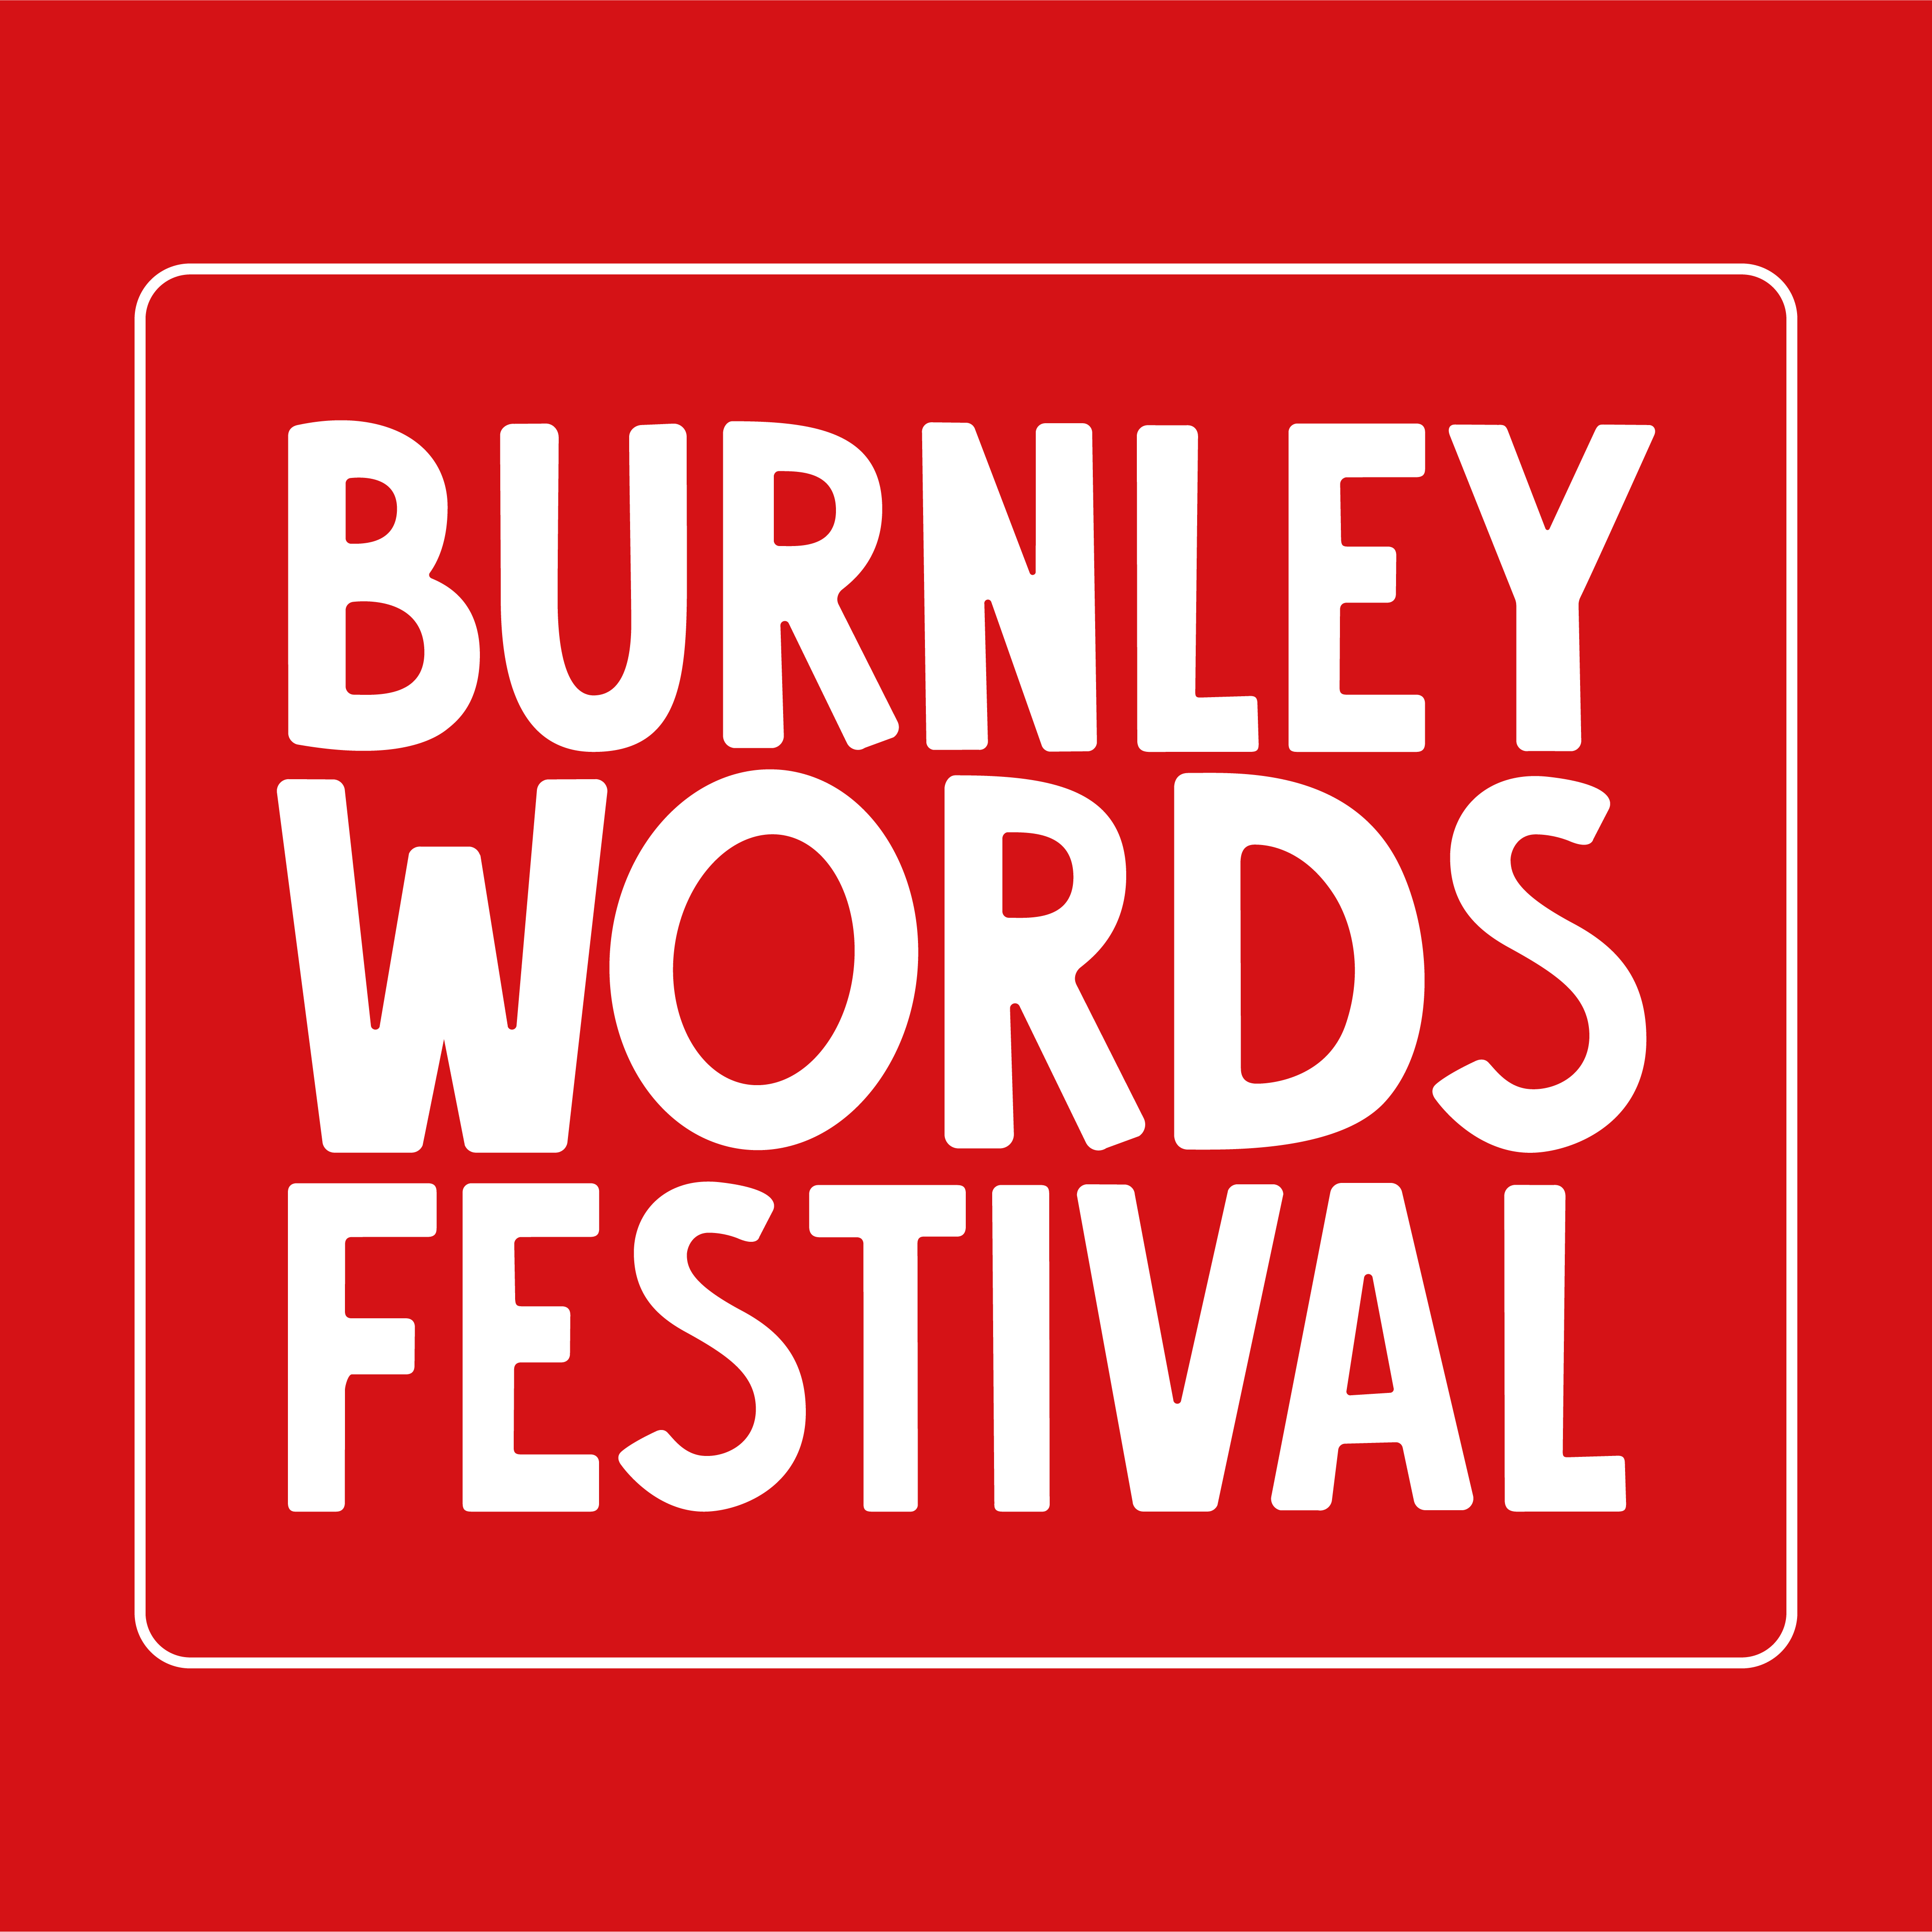 Burnley Words Festival